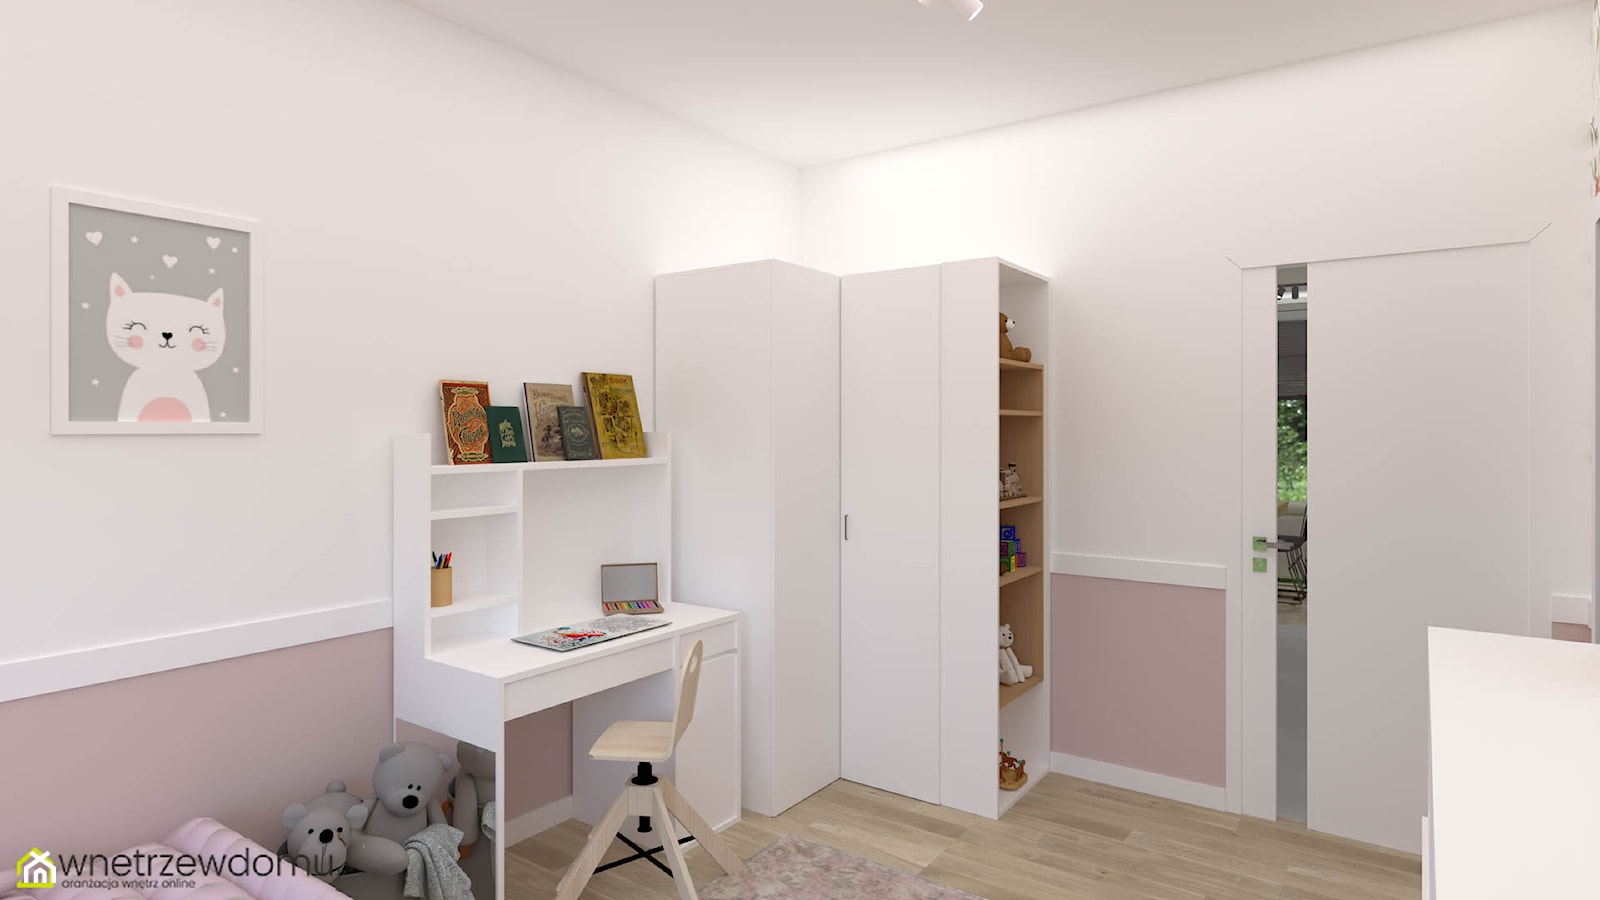 Biało-różowy pokój dla małej dziewczynki - zdjęcie od wnetrzewdomu - Homebook